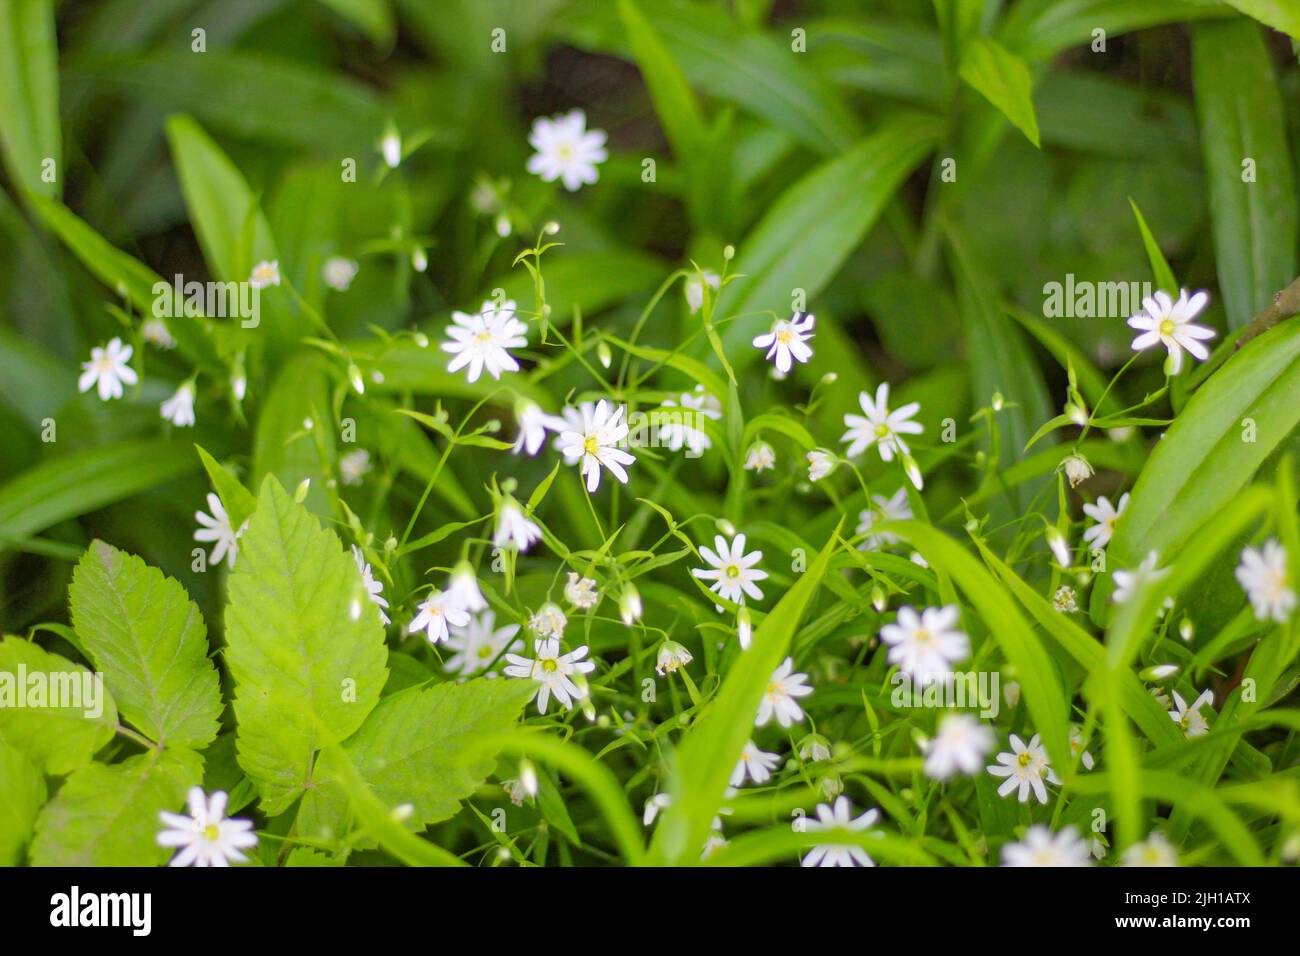 Pequeñas flores blancas como estrellas en el follaje verde del jardín en un día de verano. Foto de stock